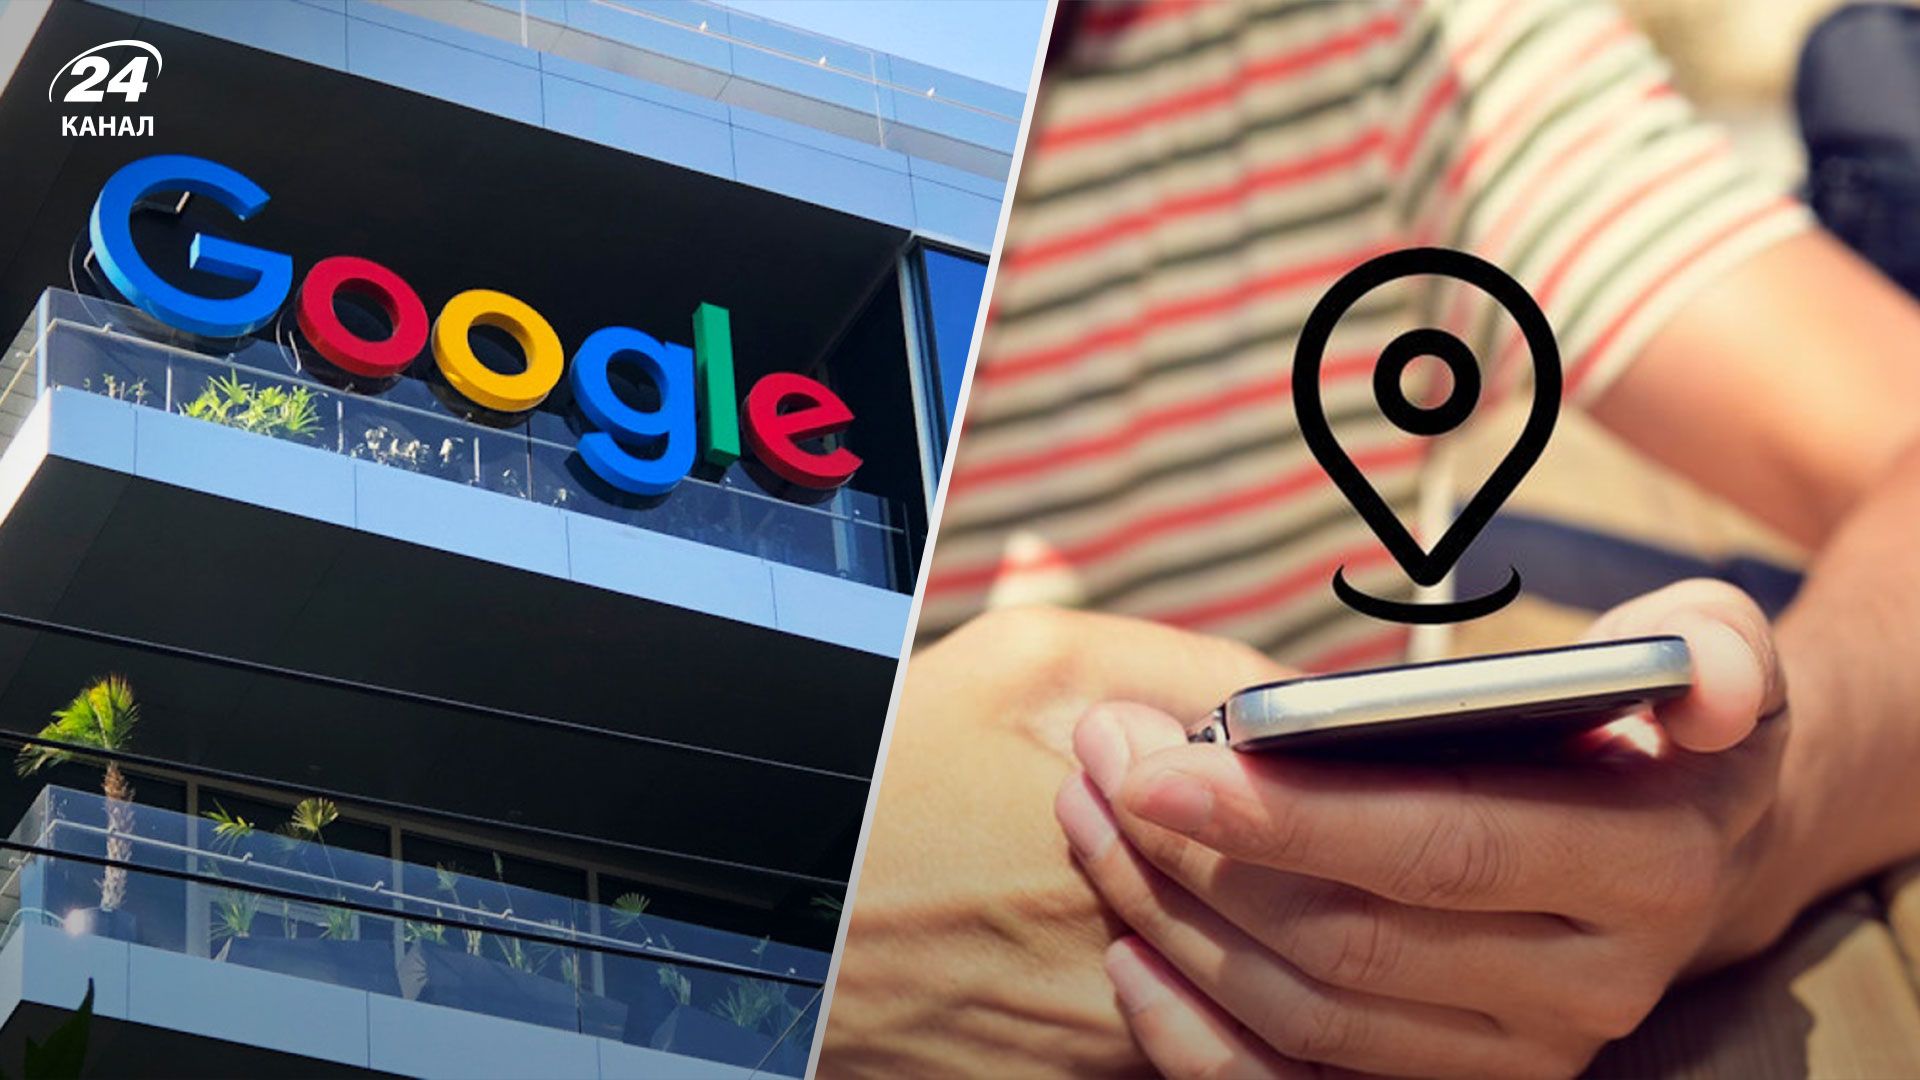 Google сплатить майже 400 мільйонів доларів для врегулювання позову щодо порушення конфіденційності даних